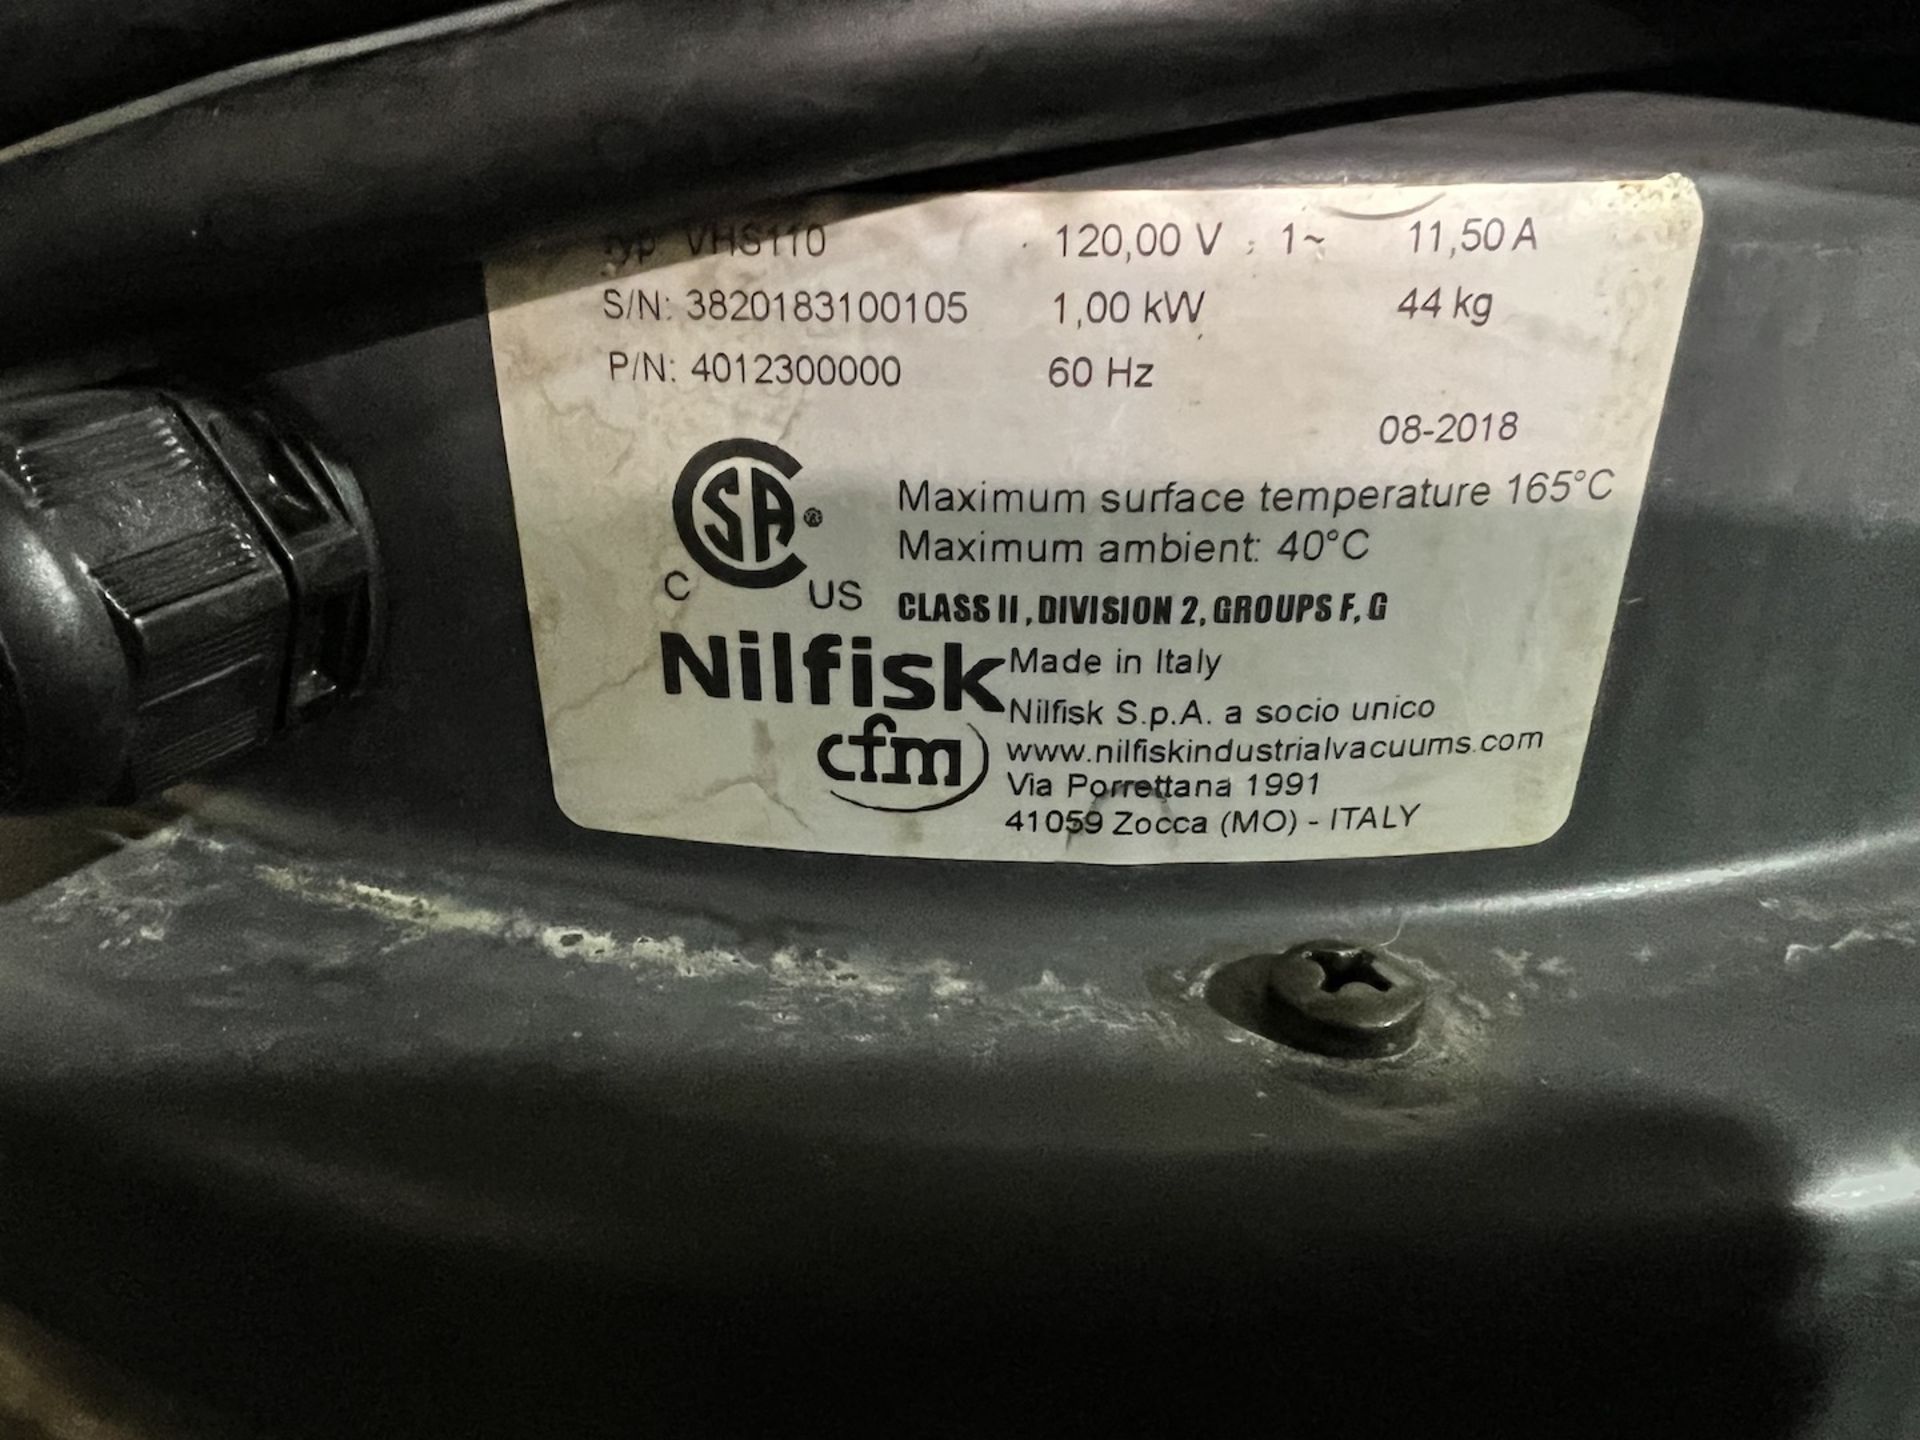 NILFISK EXPLOSION PROOF INDUSTRIAL VACUUM, MODEL VHS110, S/N 3820183100105 - Image 5 of 6